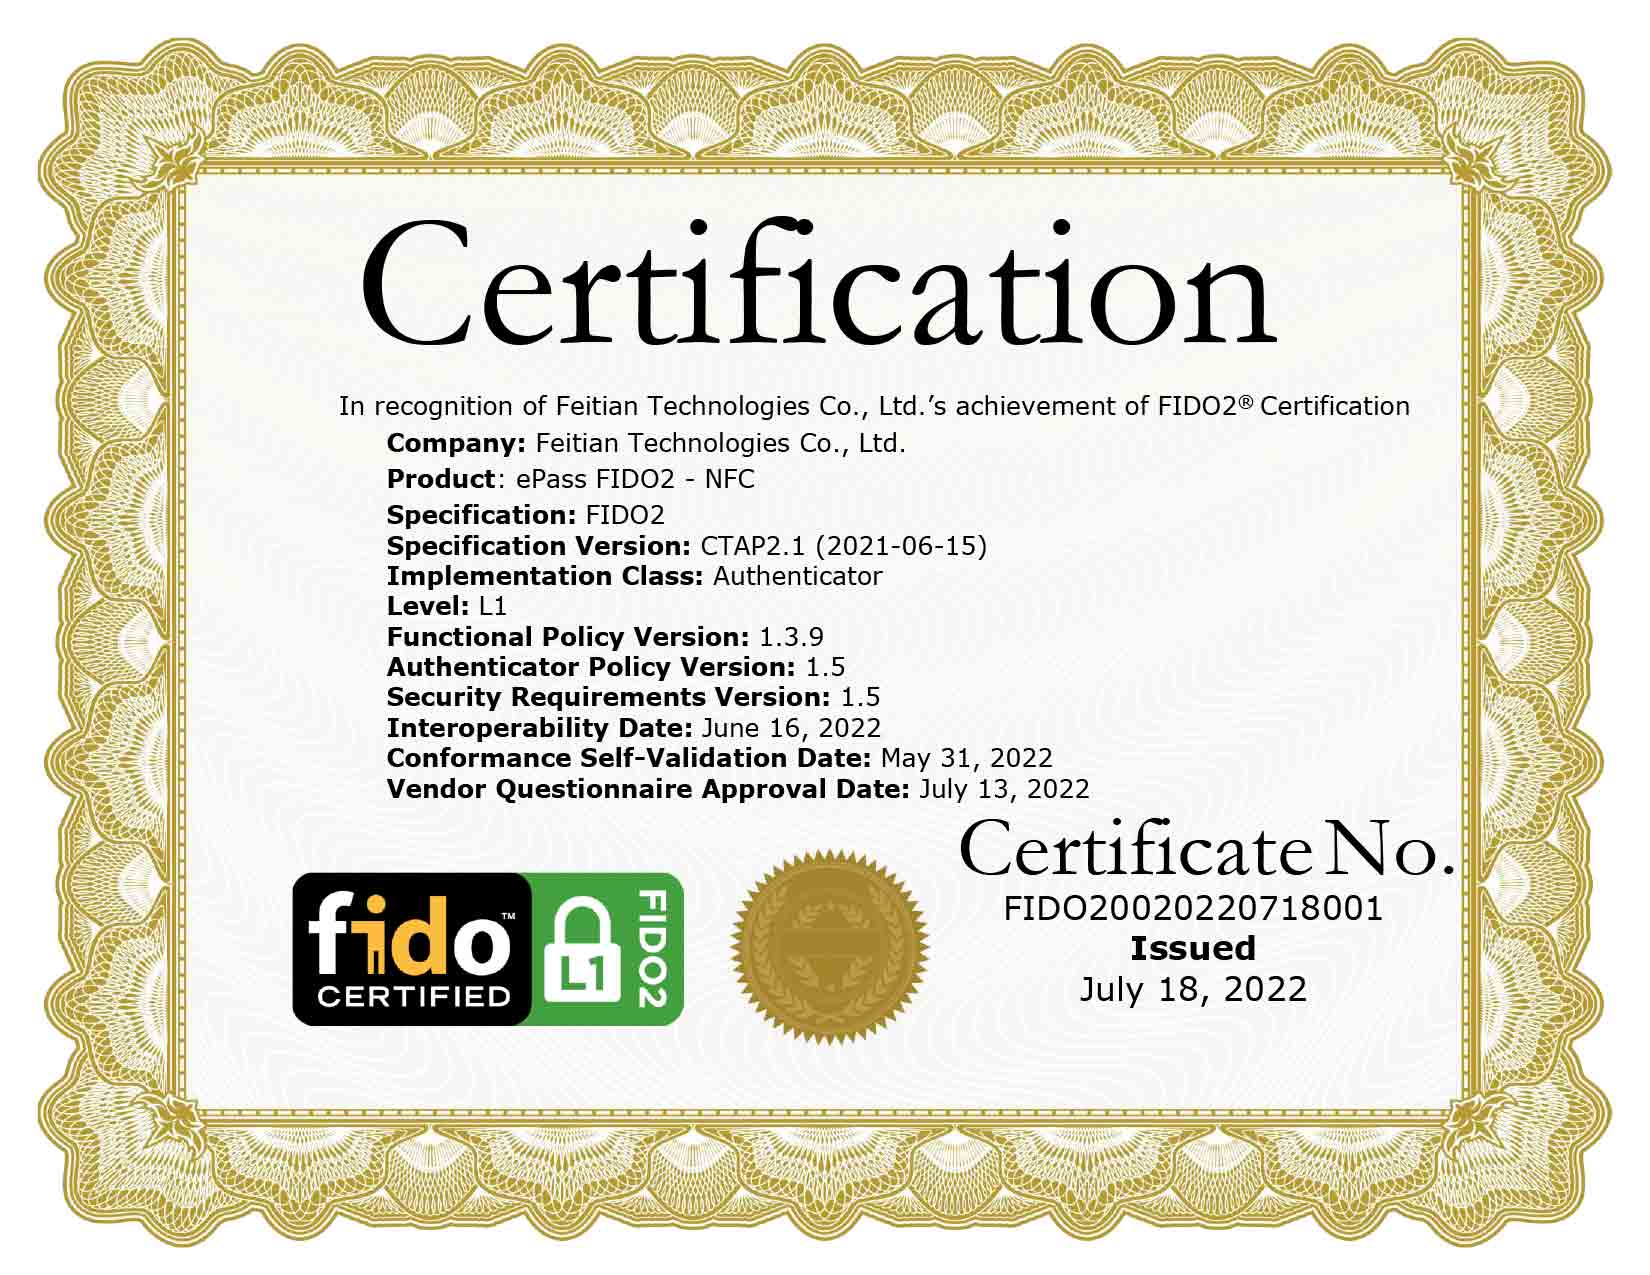 FEITIAN ePass FIDO2 - NFC CTAP2.1 Certification